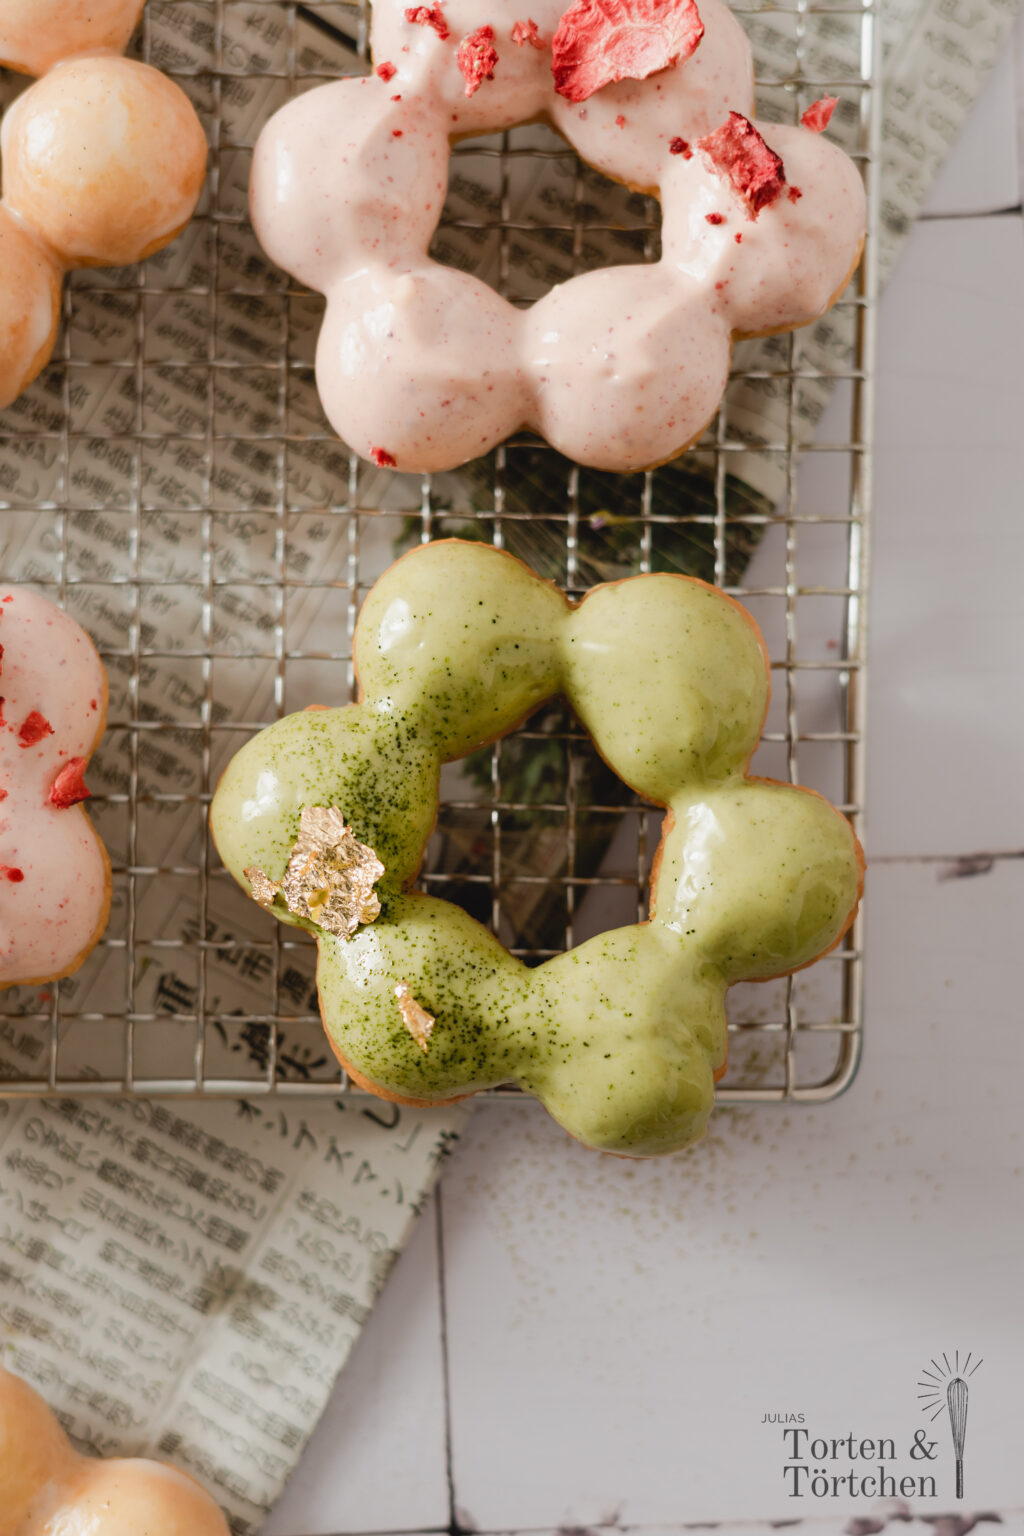 Rezept für super hübsche japanische Mochi Donuts mit pastelligen Glasuren aus Matcha, Erdbeeren und Vanille. Mit ihrer luftigen, chewy Konsistenz sind Mochi Donuts nicht nur super lecker, sondern auch noch deutlich kalorienärmer als normale Donuts und machen beim auseinanderzupfen der einzelnen Teigkugeln auch noch super viel Spaß beim essen!

#Mochi #Donuts #MochiDonuts #Rezept #Backen